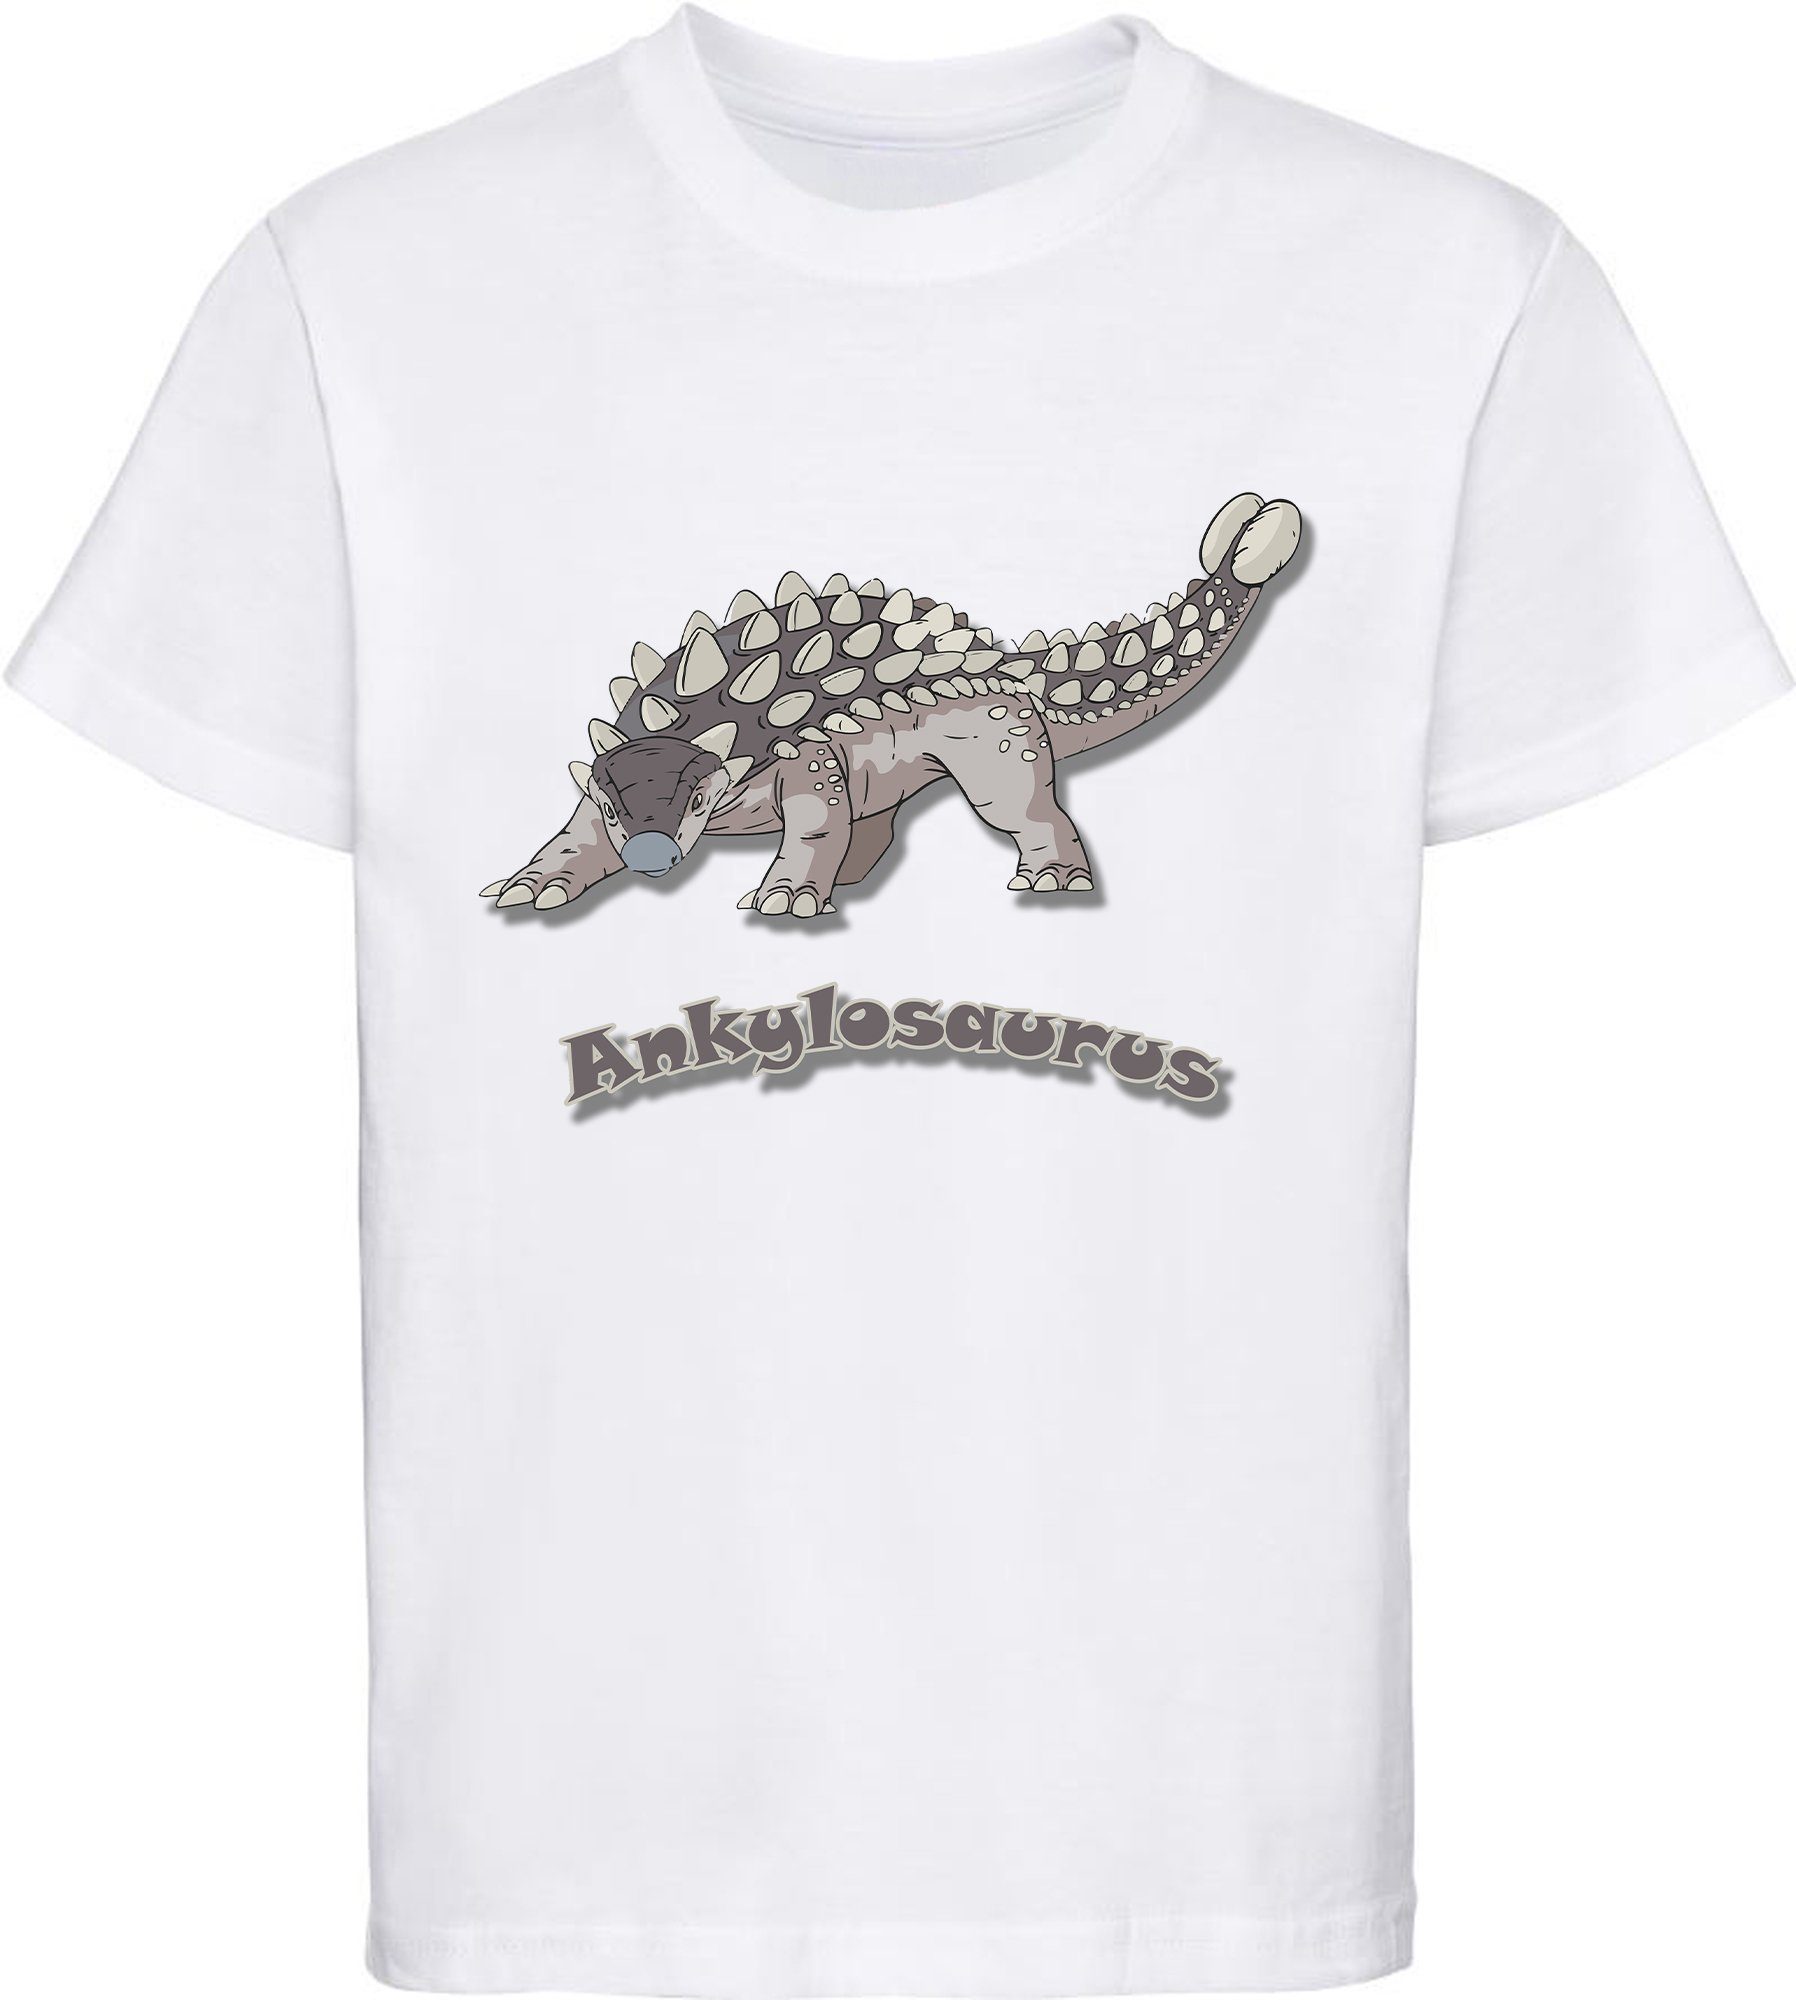 MyDesign24 Print-Shirt bedrucktes Kinder T-Shirt mit Ankylosaurus 100% Baumwolle mit Dino Aufdruck, schwarz, weiß, rot, blau, i63 weiss